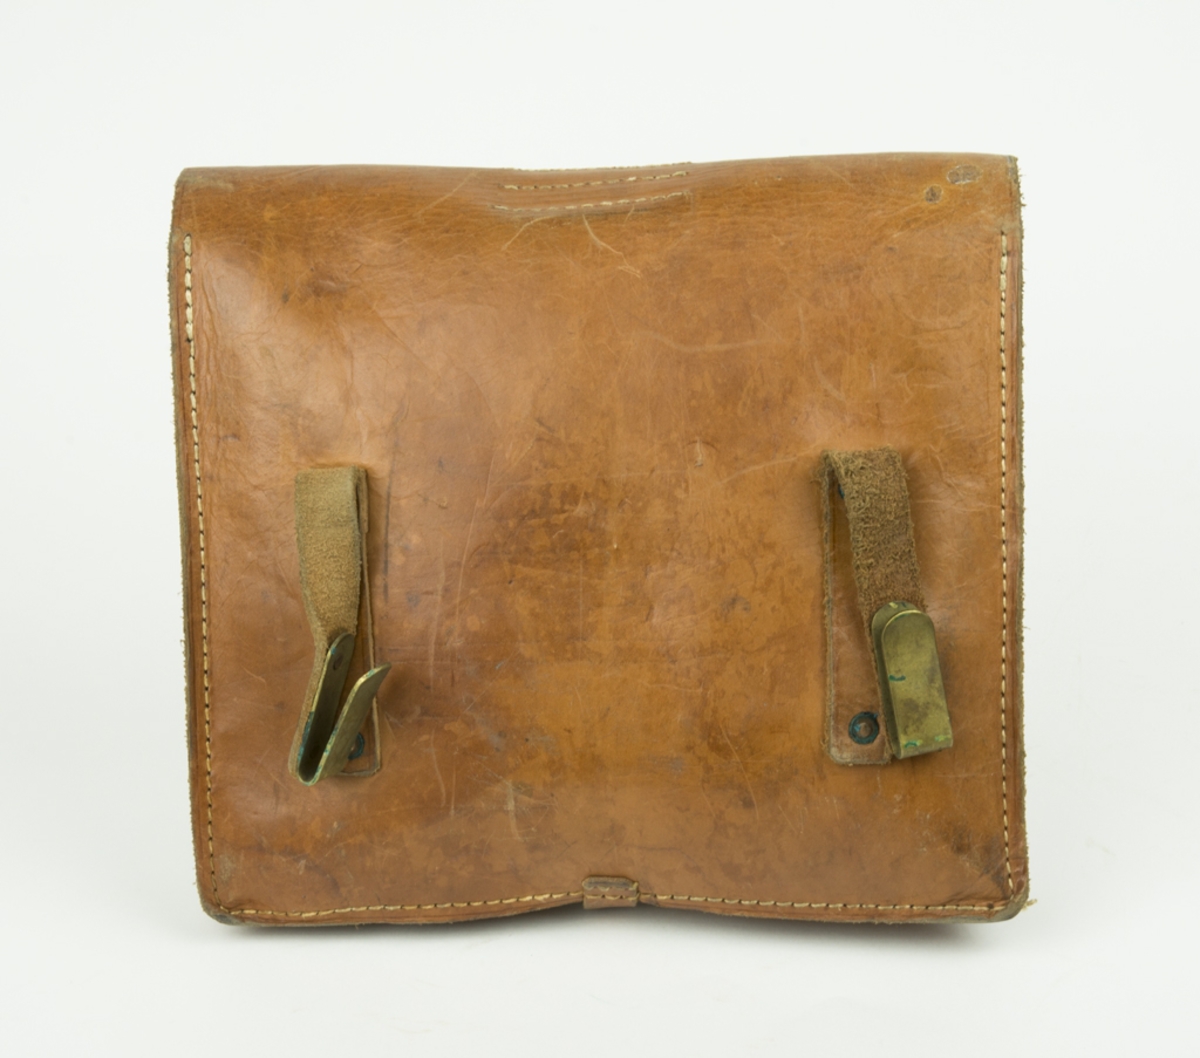 Väska för trådsignalpersonal. Läderväska med axelrem. Läderväskan innehåller Burk med spikmärlor, eltape, plattång med läderband, skruvmejsel mm.